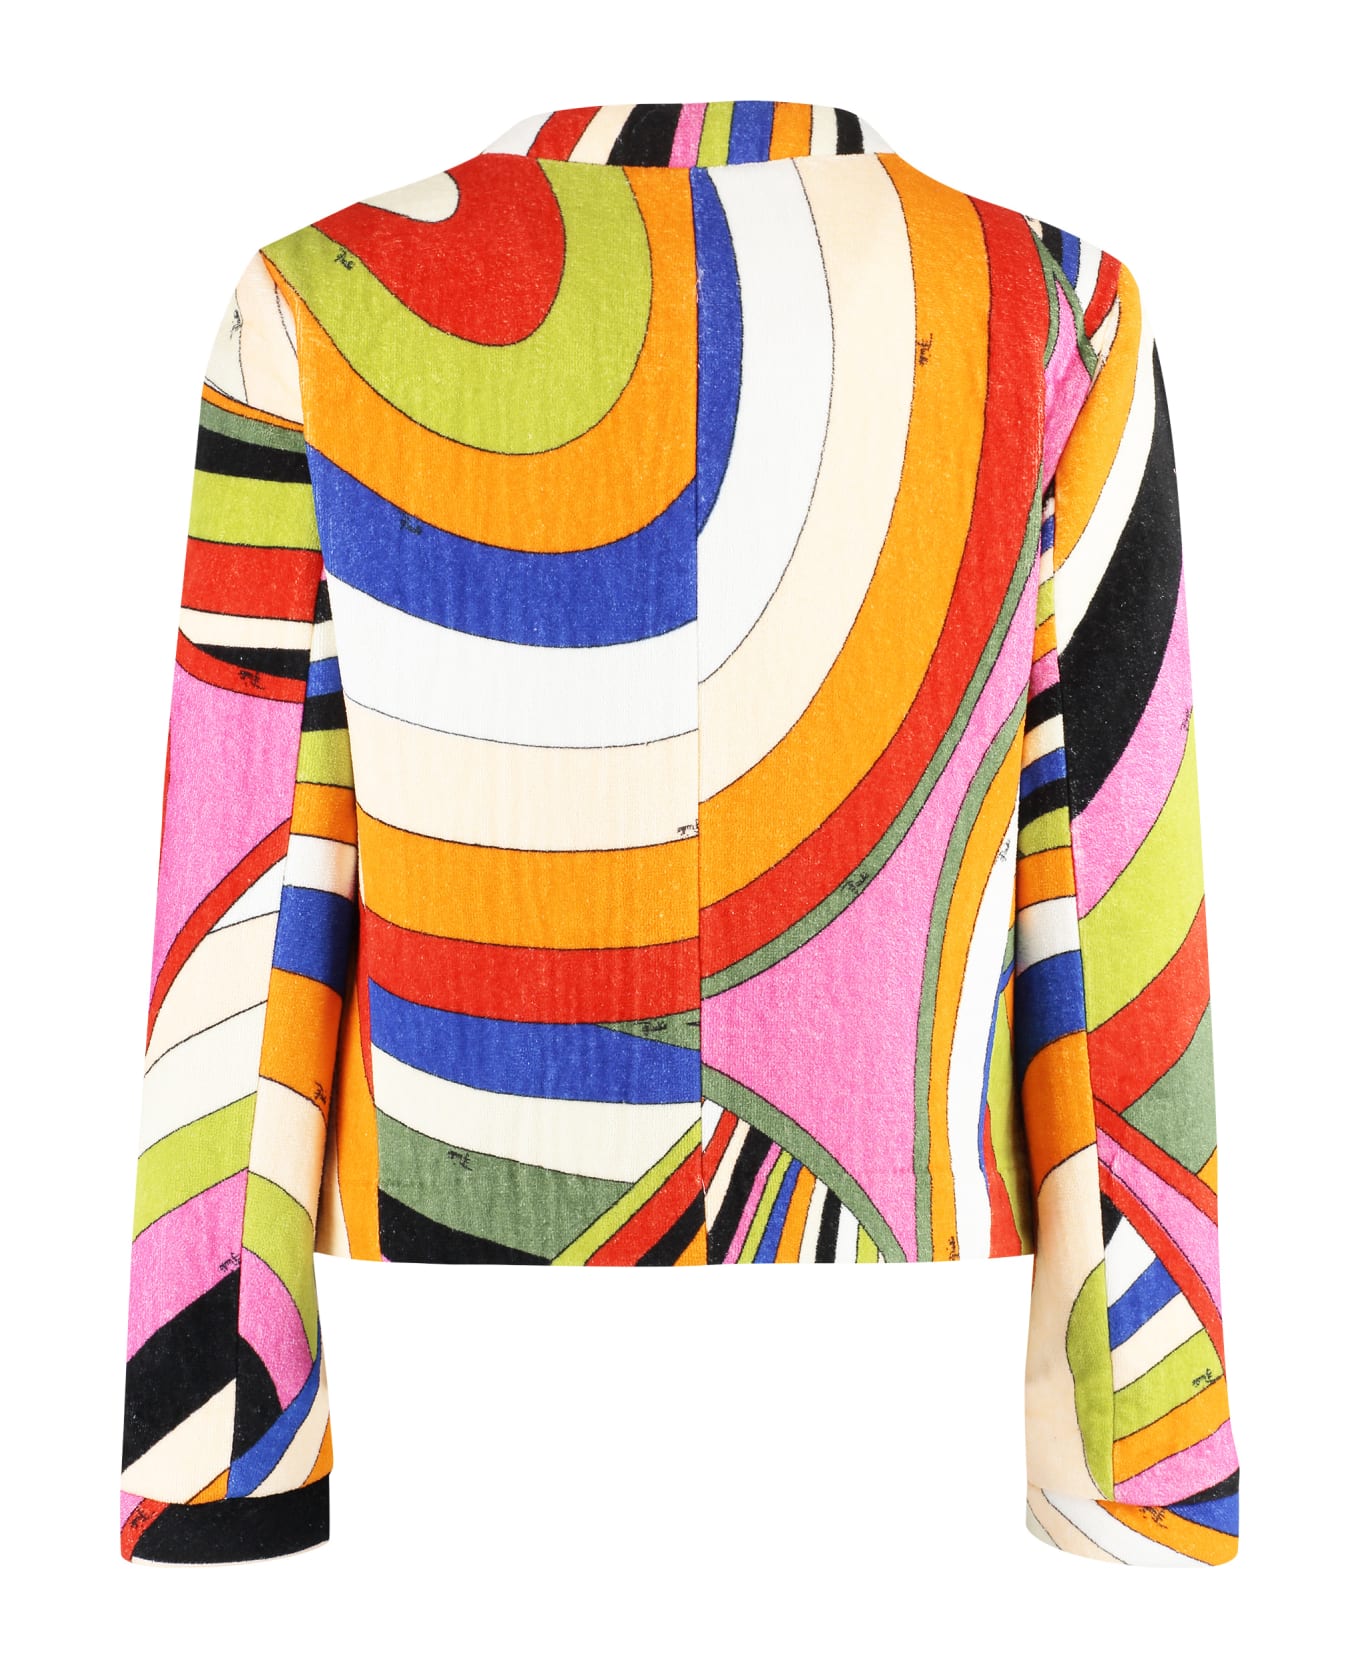 Pucci Printed Cotton Jacket - Multicolor